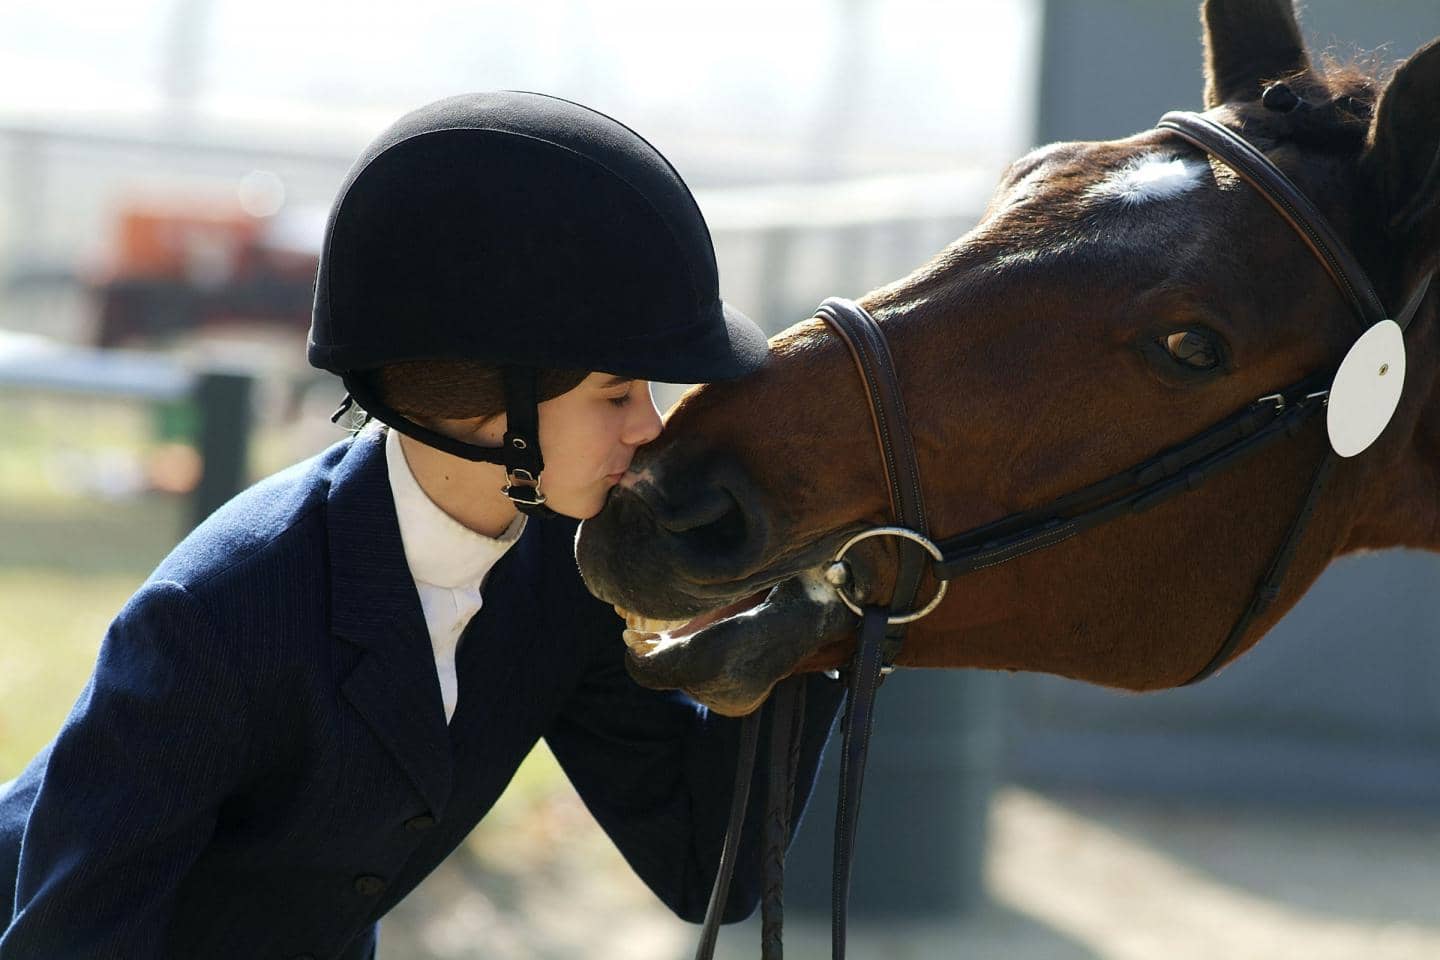 hesteforsikring - markedets bedste hesteforsikring til dig og din hest. Kvinde kysser hest på mulen